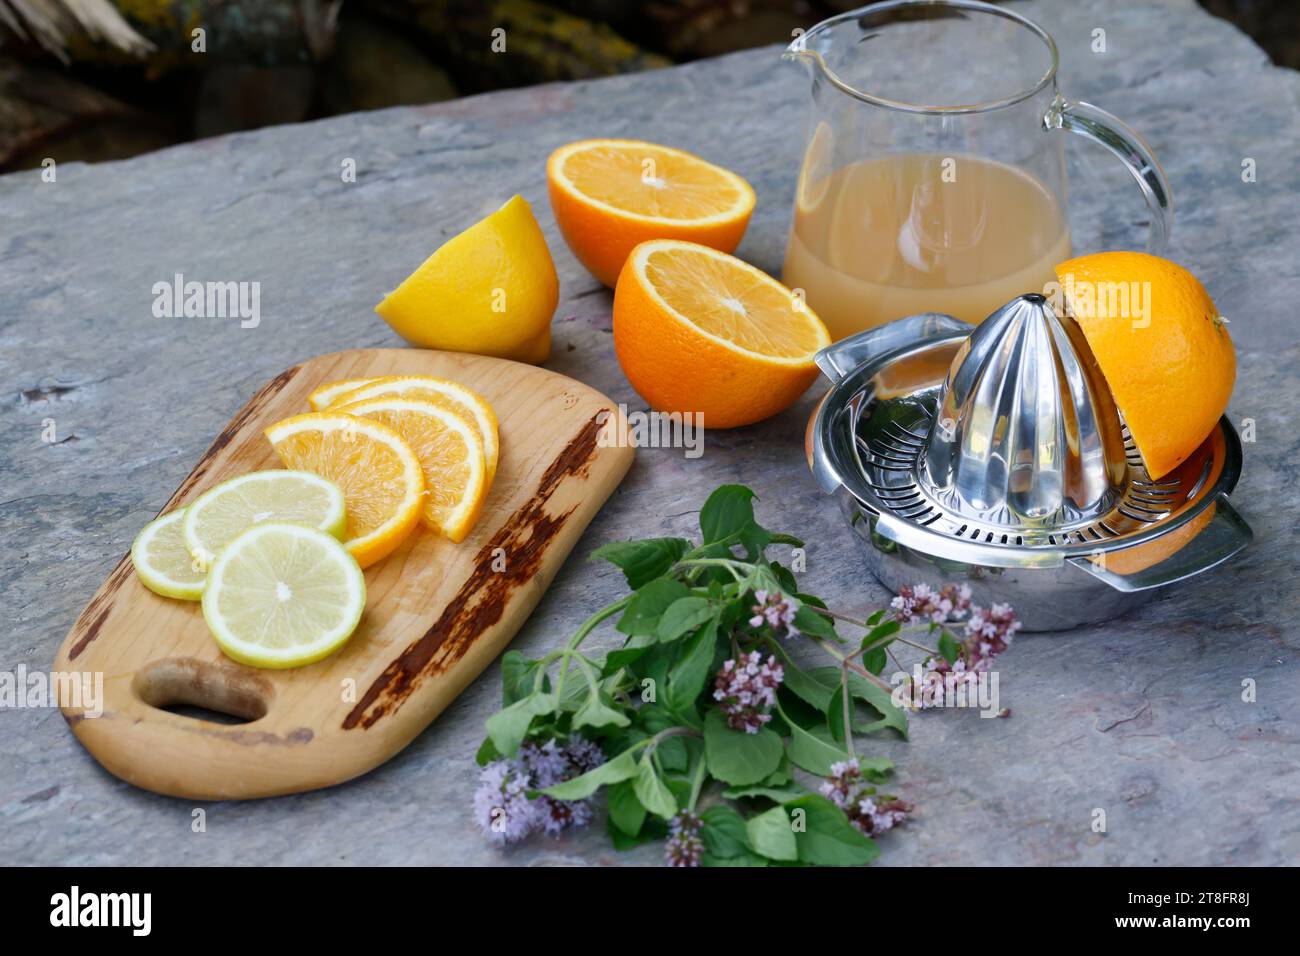 Eistee, EIS-Tee aus Kräutertee gemischt mit Apfelsafe, Saft von Orange, Saft von Zitrone, thé glacé, thé glacé Schritt 2 : Zutaten - Kräutertee, Apfelsaf Banque D'Images